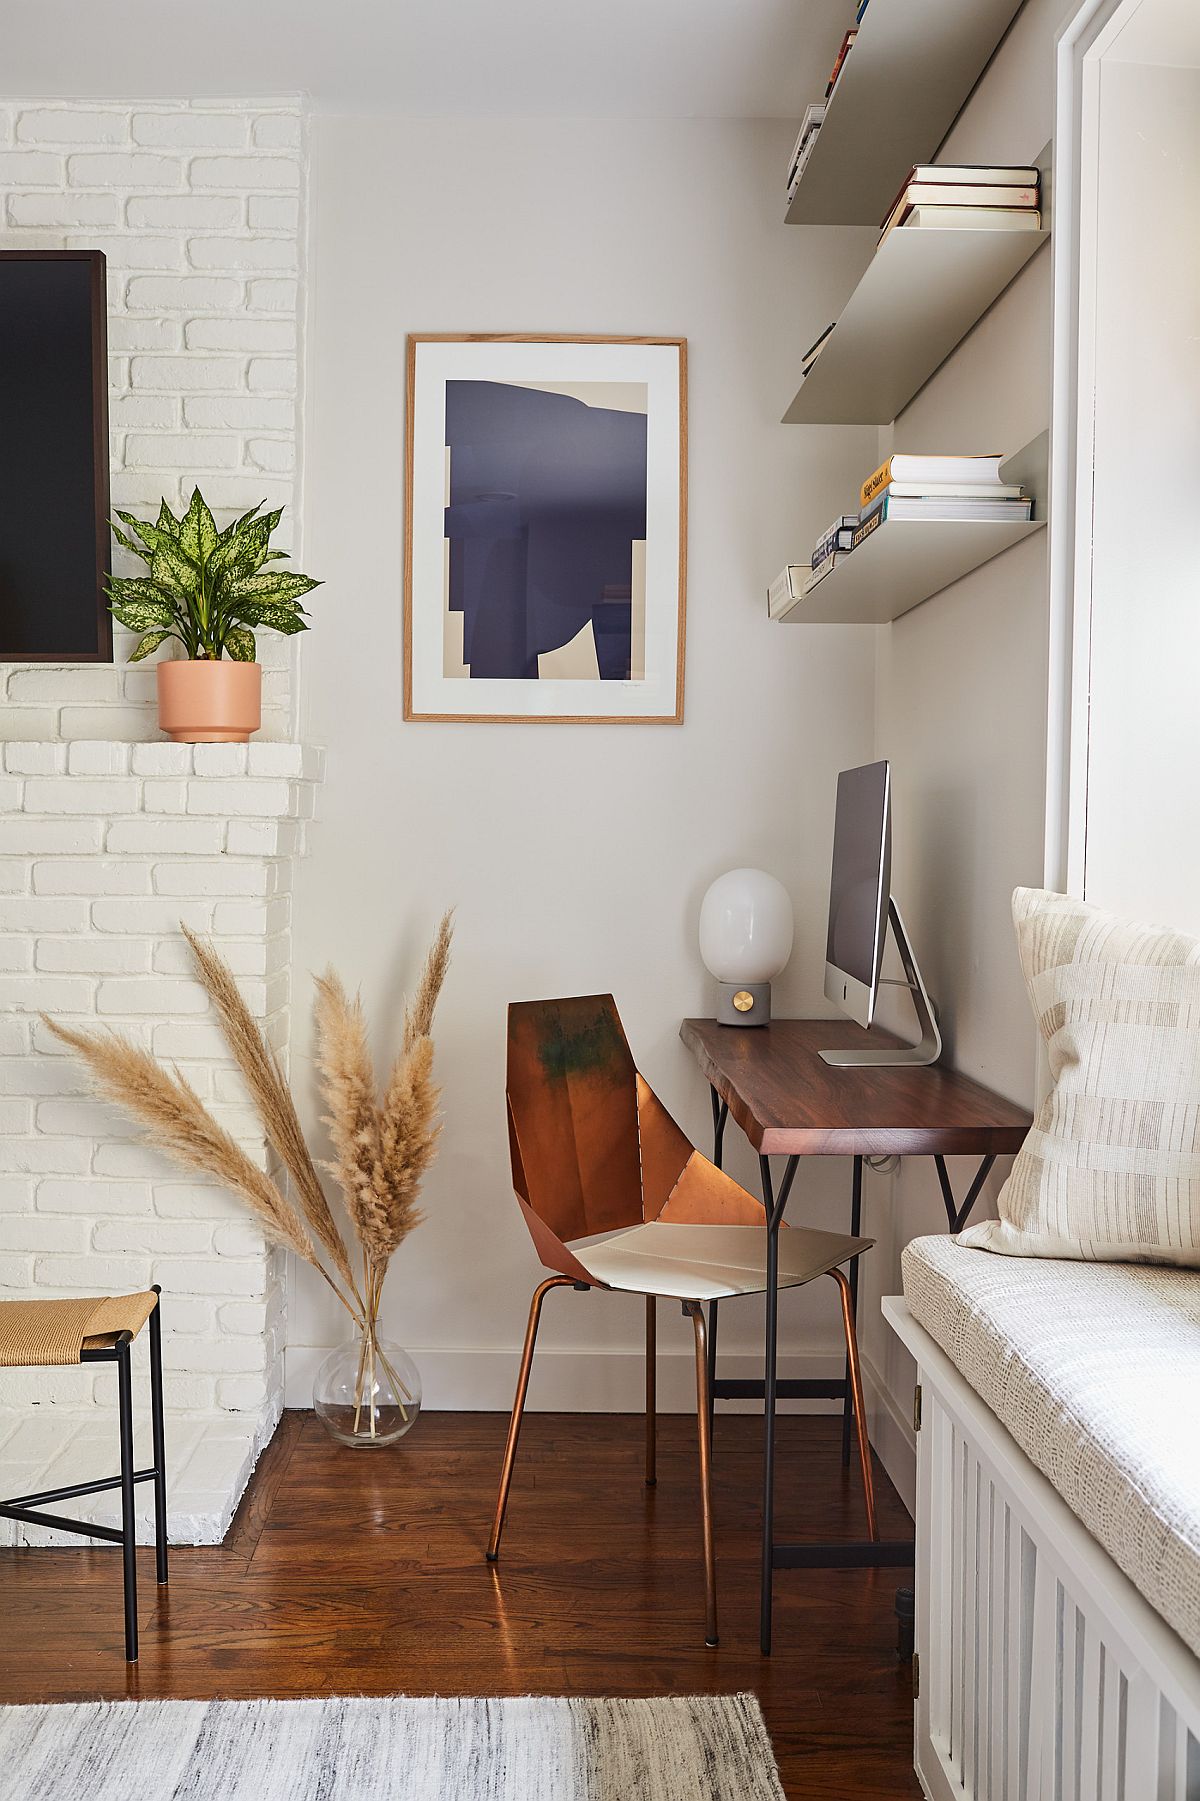 Những món nội thất nhỏ gọn, đa năng cho phòng làm việc tại nhà được tìm kiếm nhiều nhất trong năm 2021.